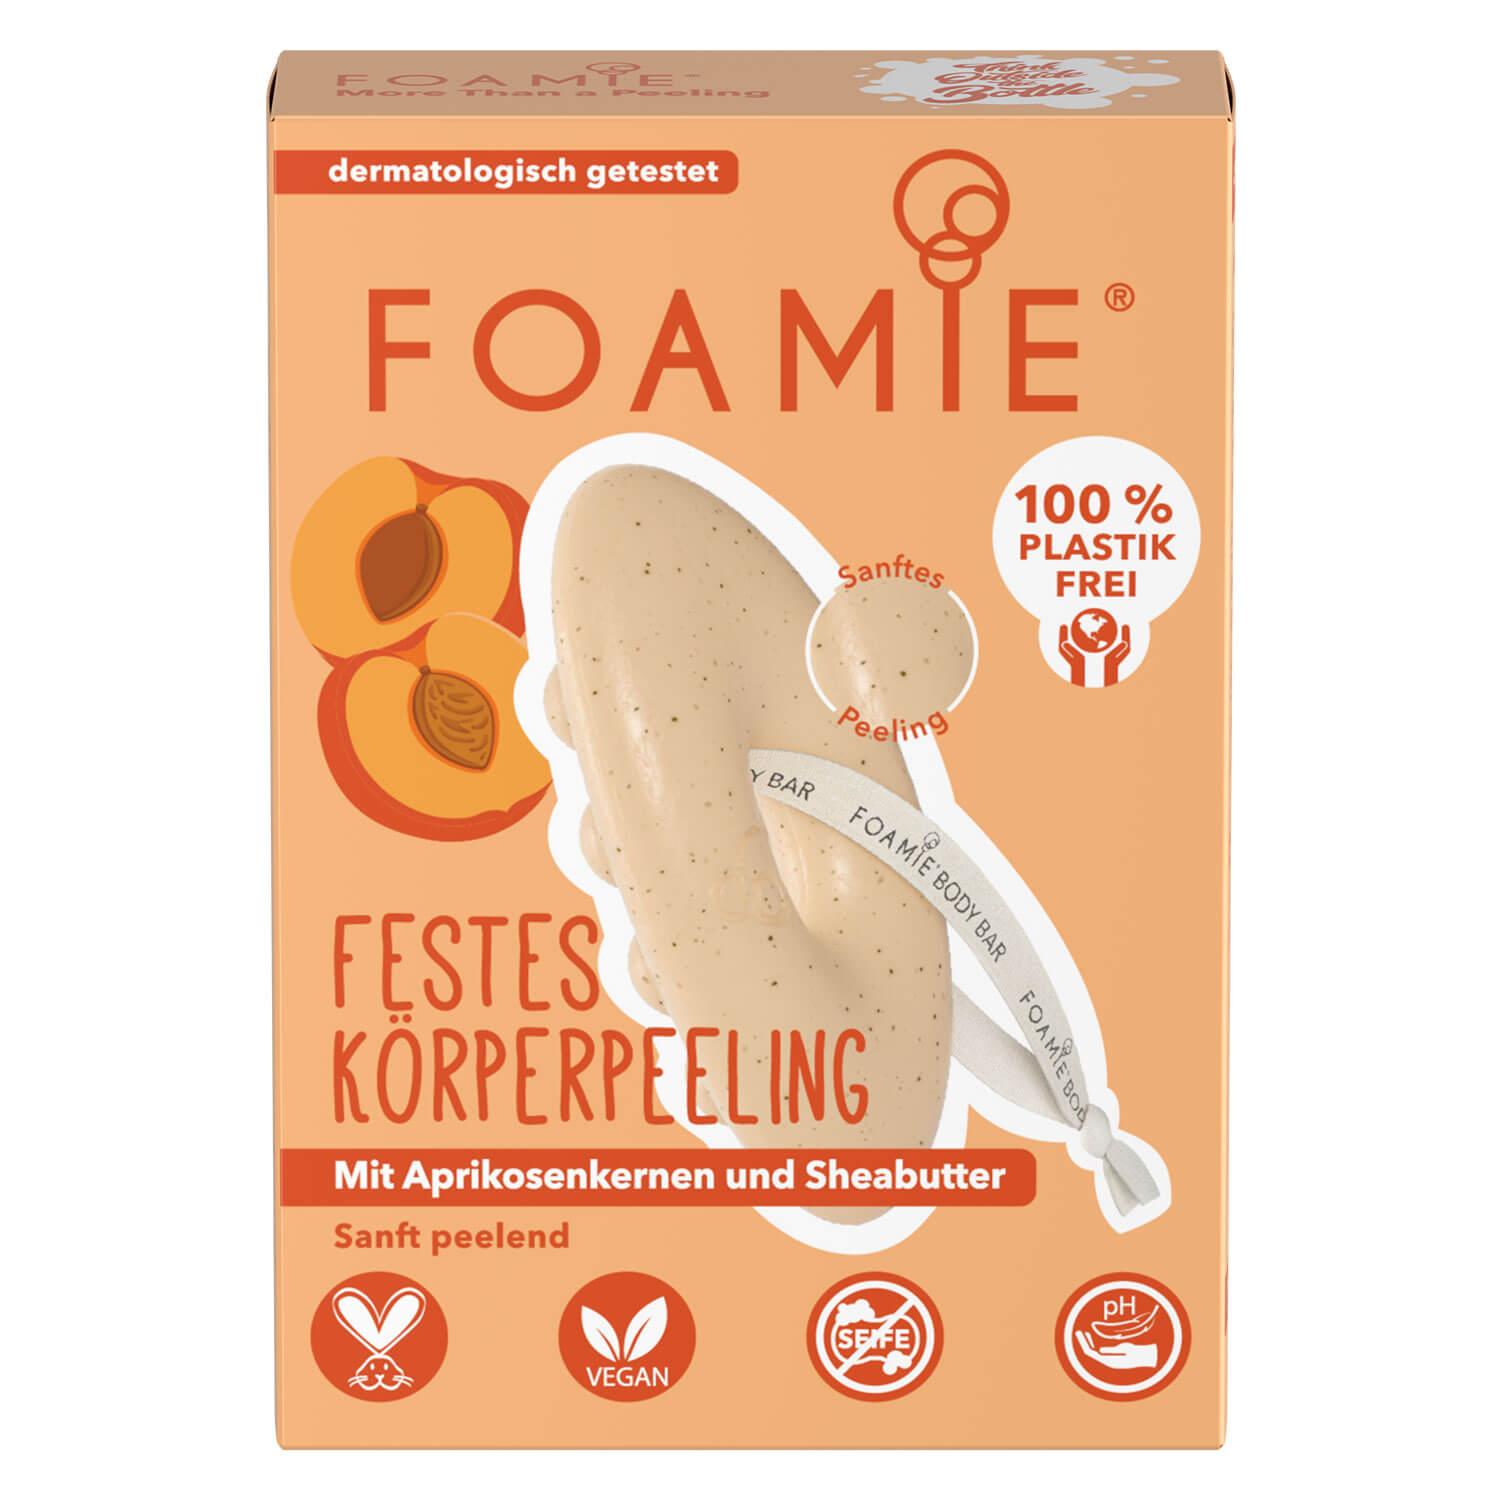 Foamie - Festes Körperpeeling More Than A Peeling